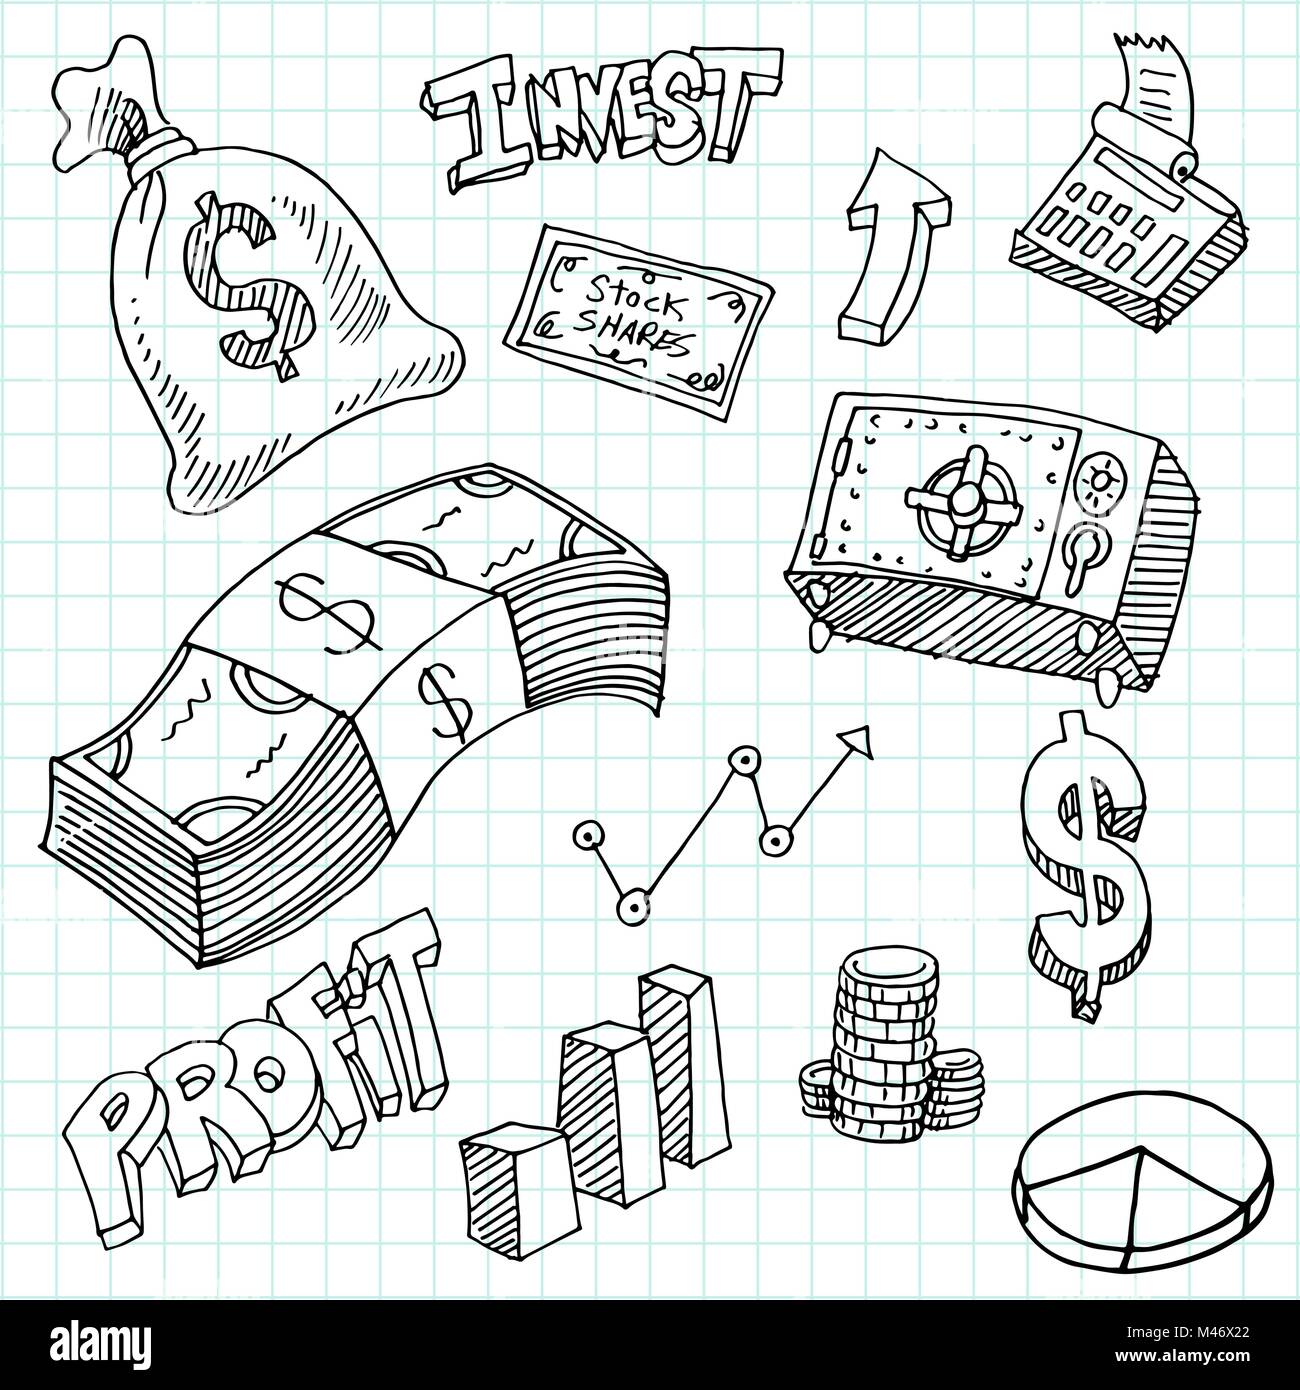 Ein Bild von einer finanziellen Investition Symbole Zeichnung auf einem Grid Hintergrund. Stock Vektor